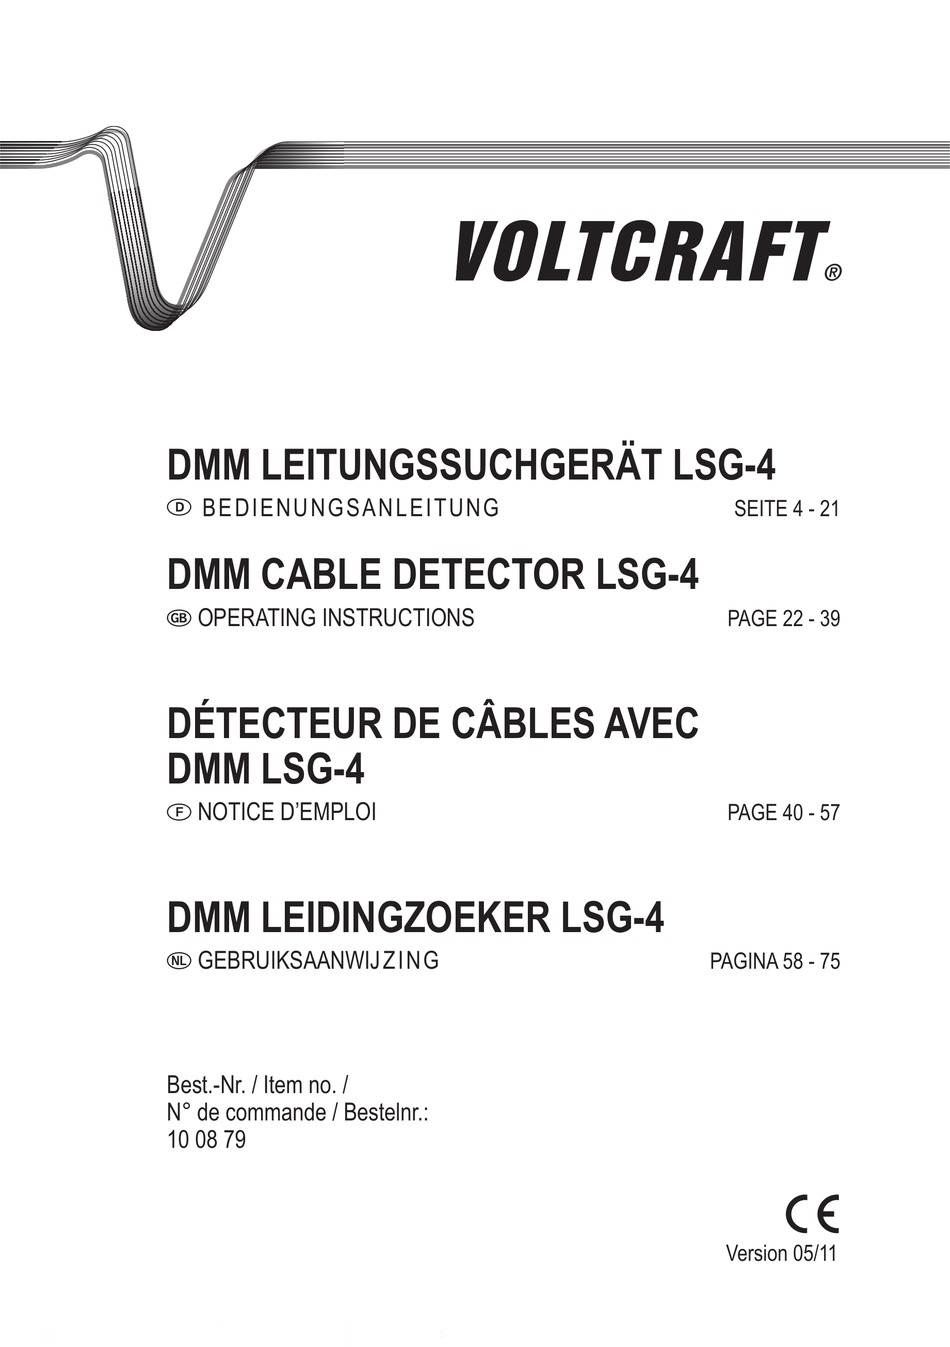 VOLTCRAFT LSG-4 Leitungssucher 